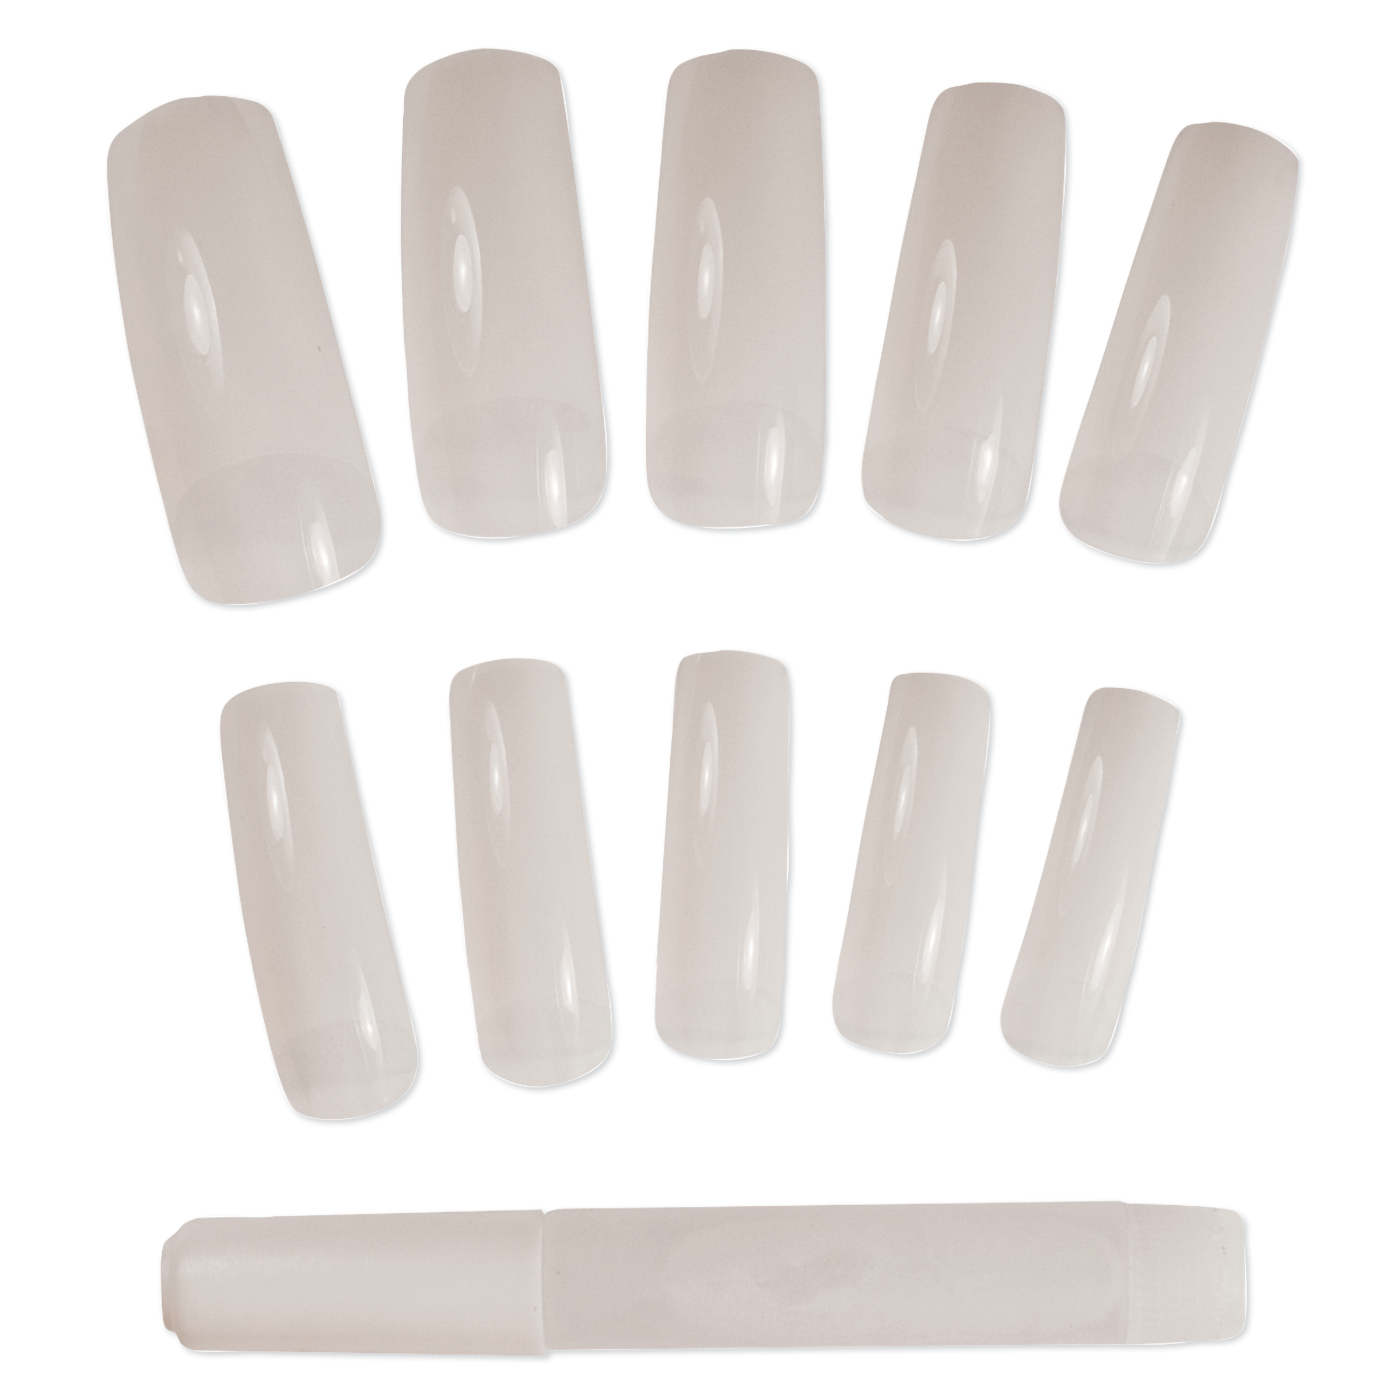 Nail Tips Kit with Nail Glue - 100 pc.